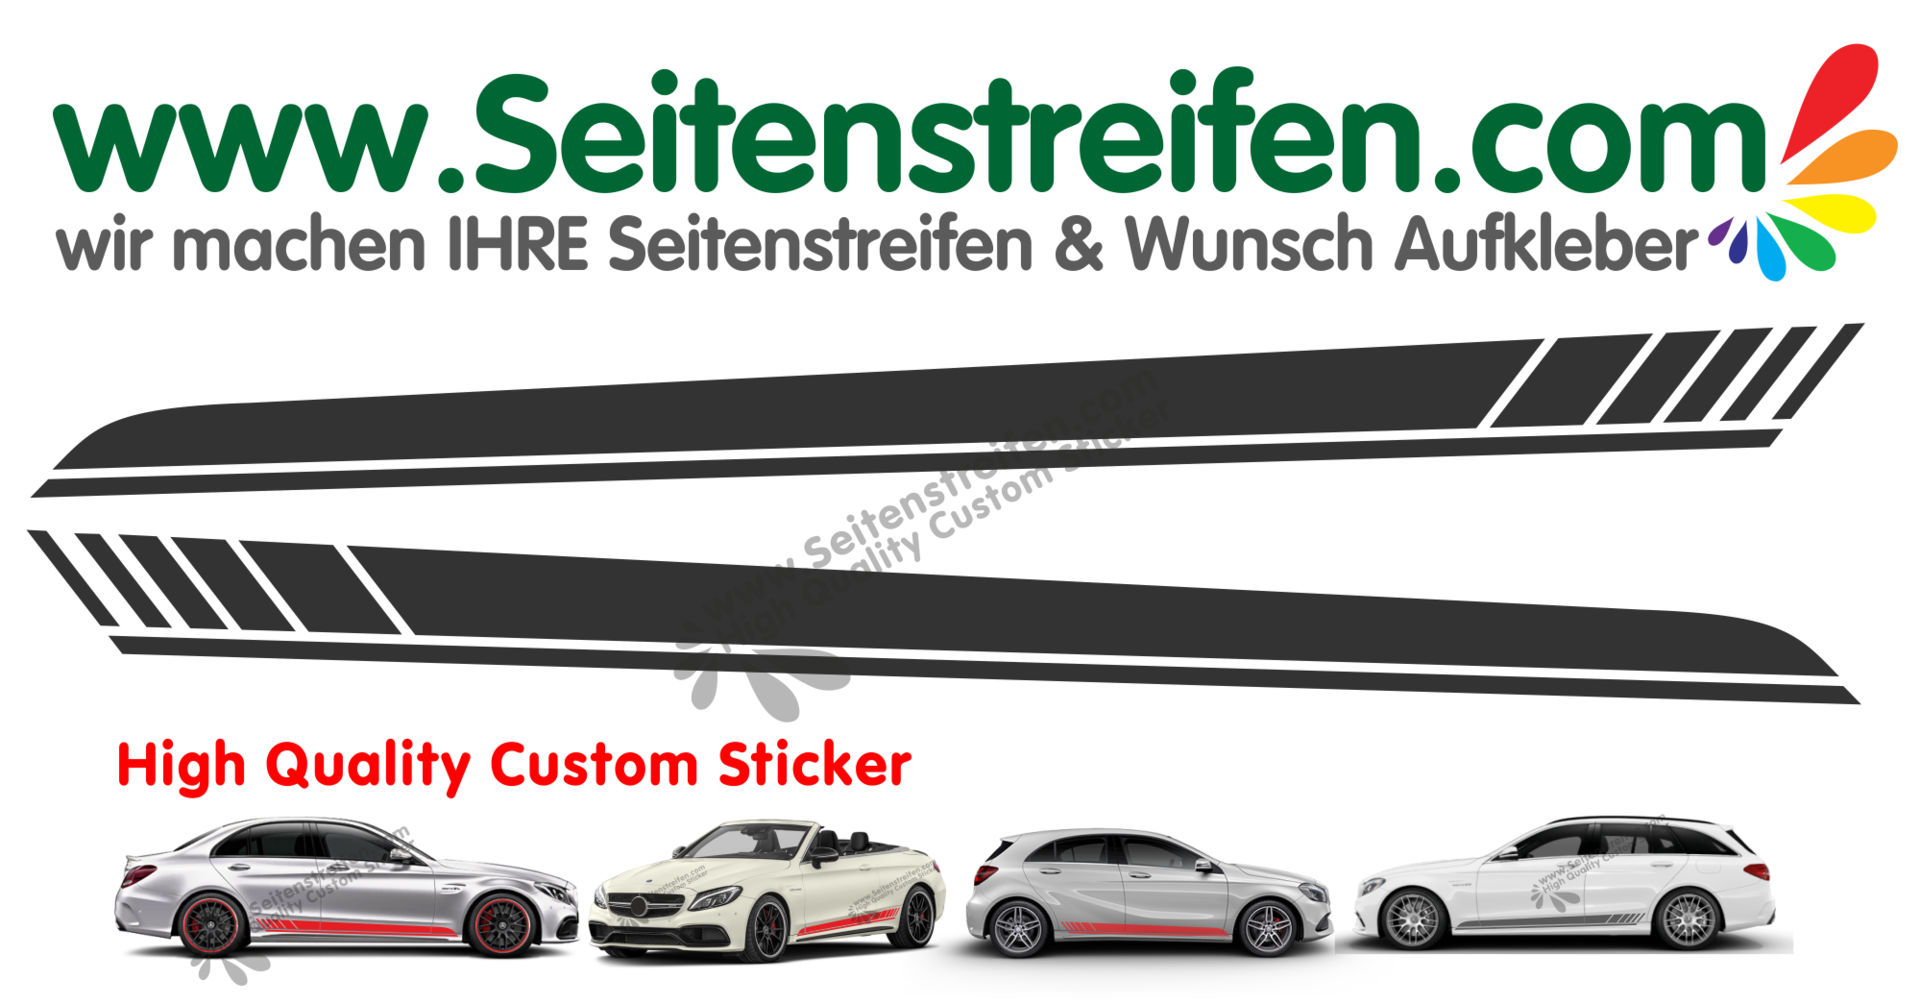 Mercedes Benz G Klasse 2 und 4 Türer  AMG Edition 1 Look - Seitenstreifen Aufkleber Set 1088